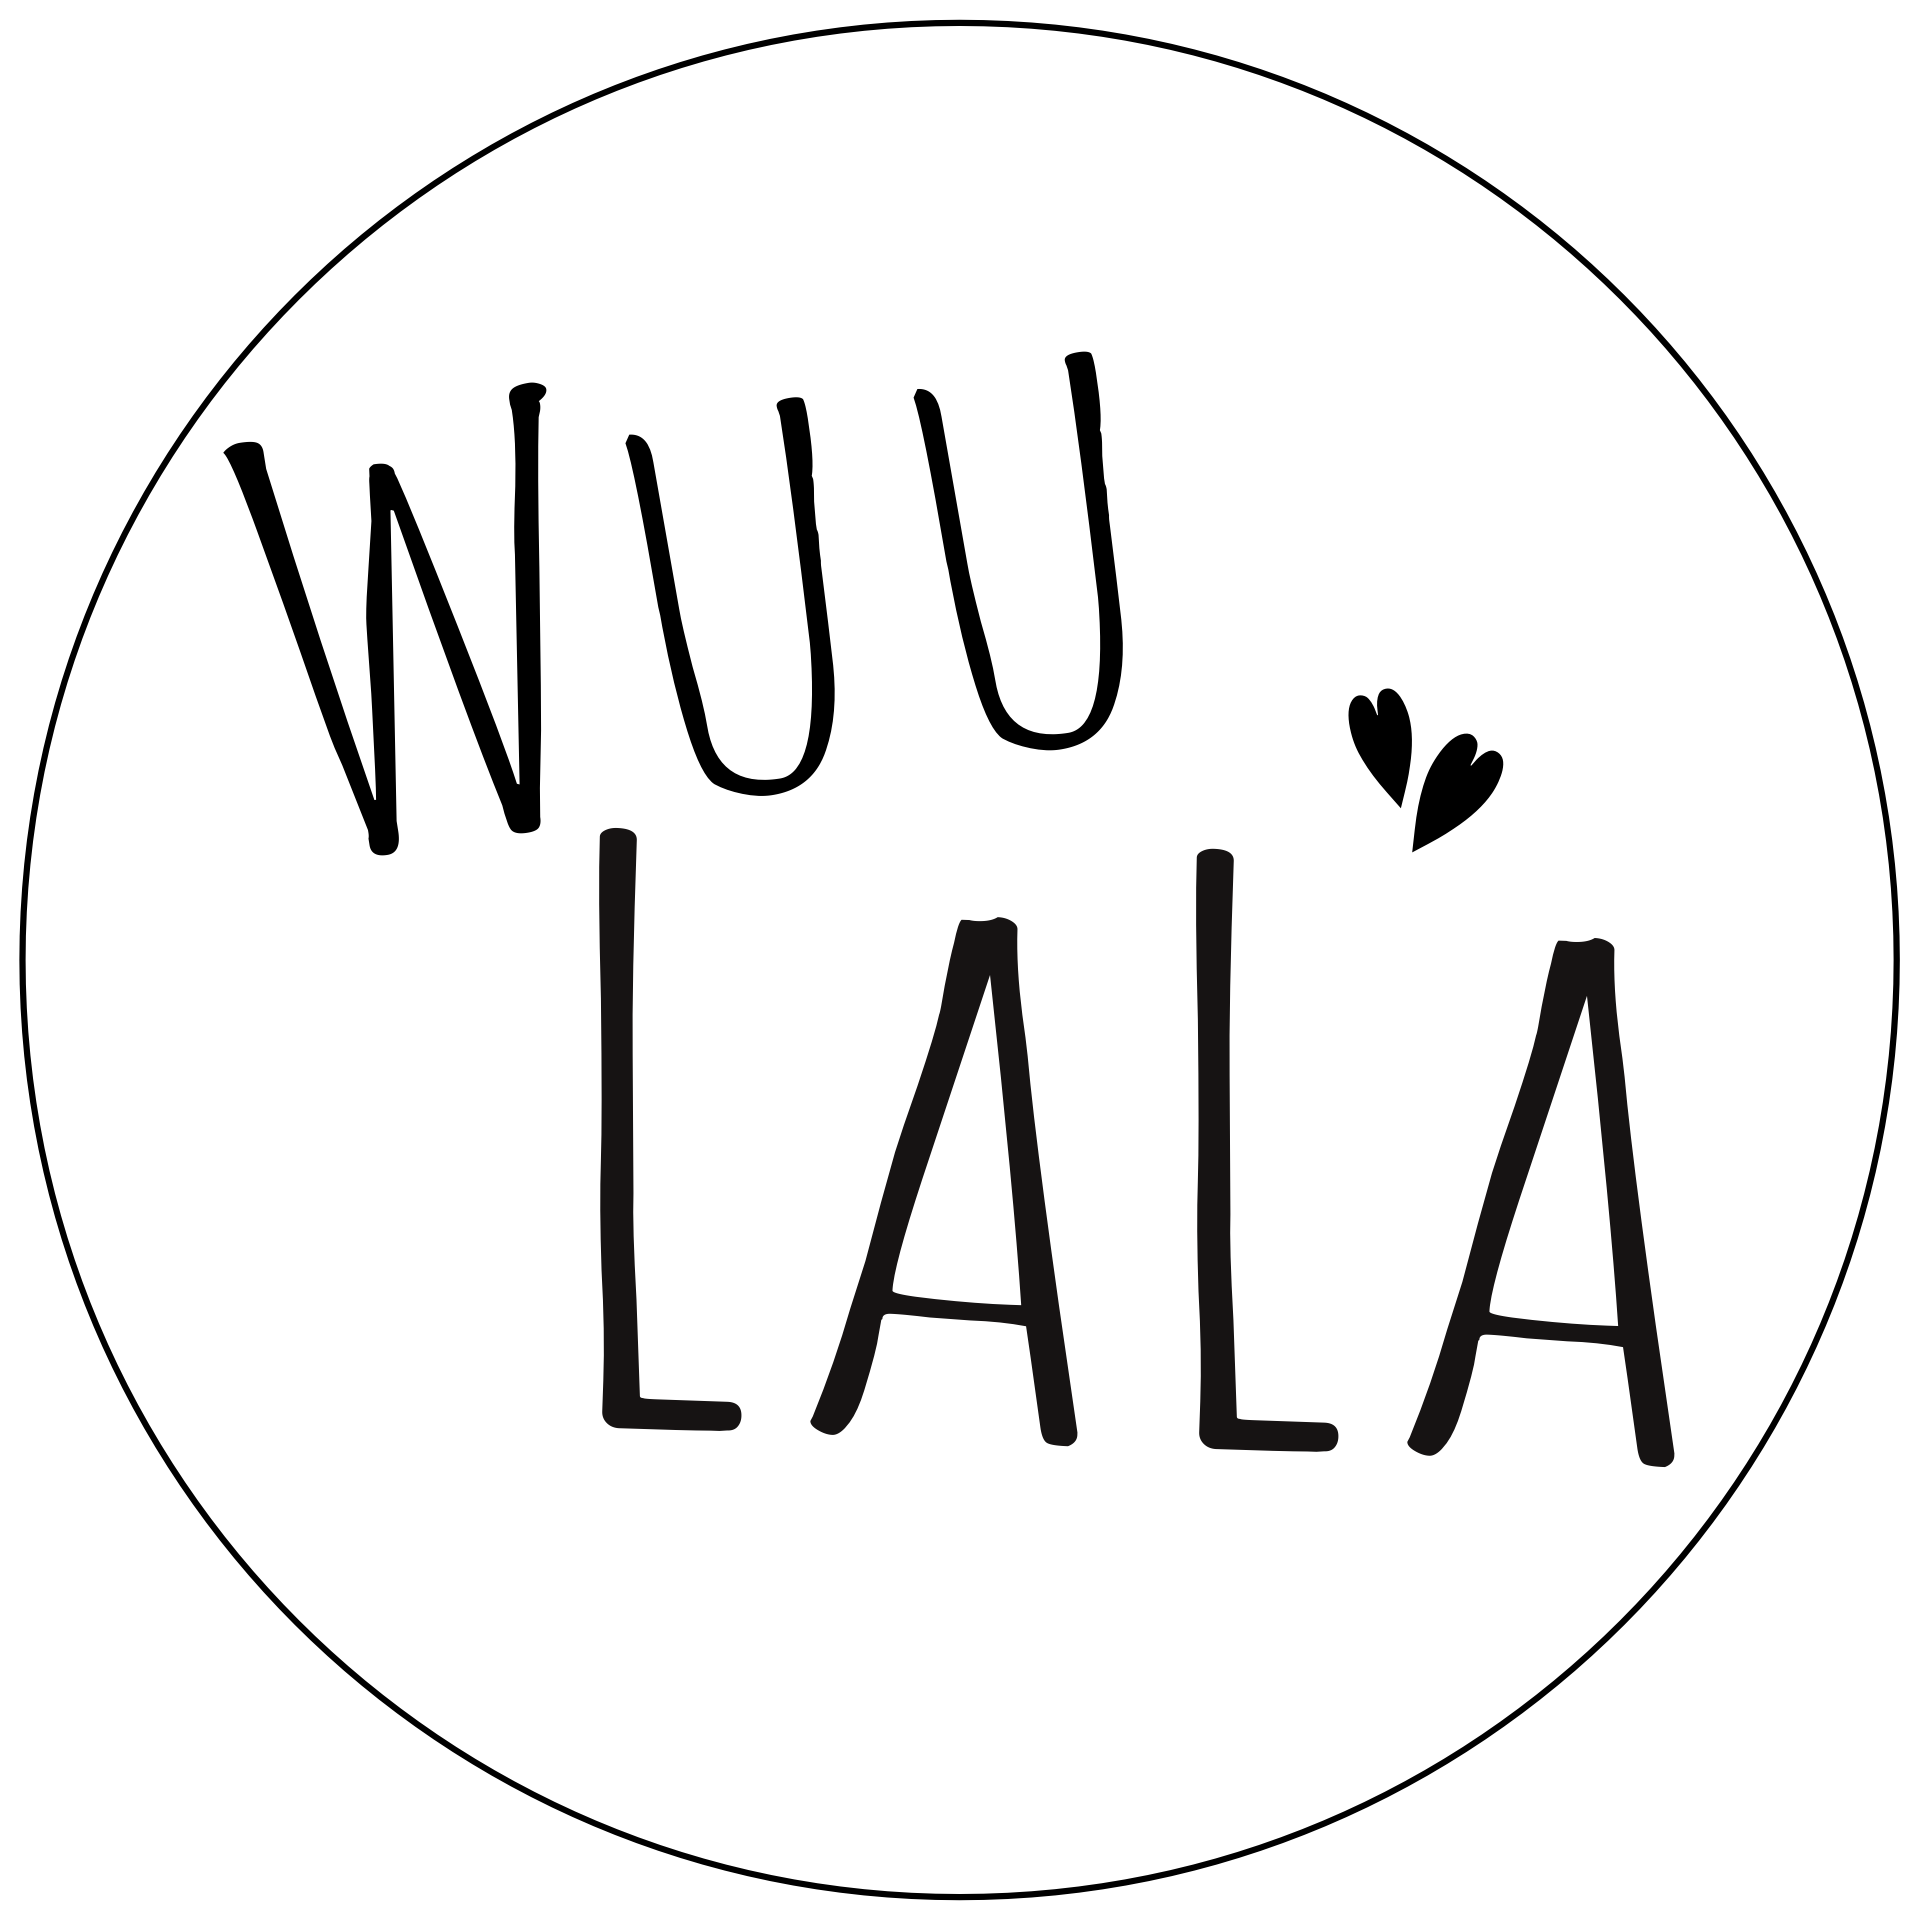 Wuu LaLa